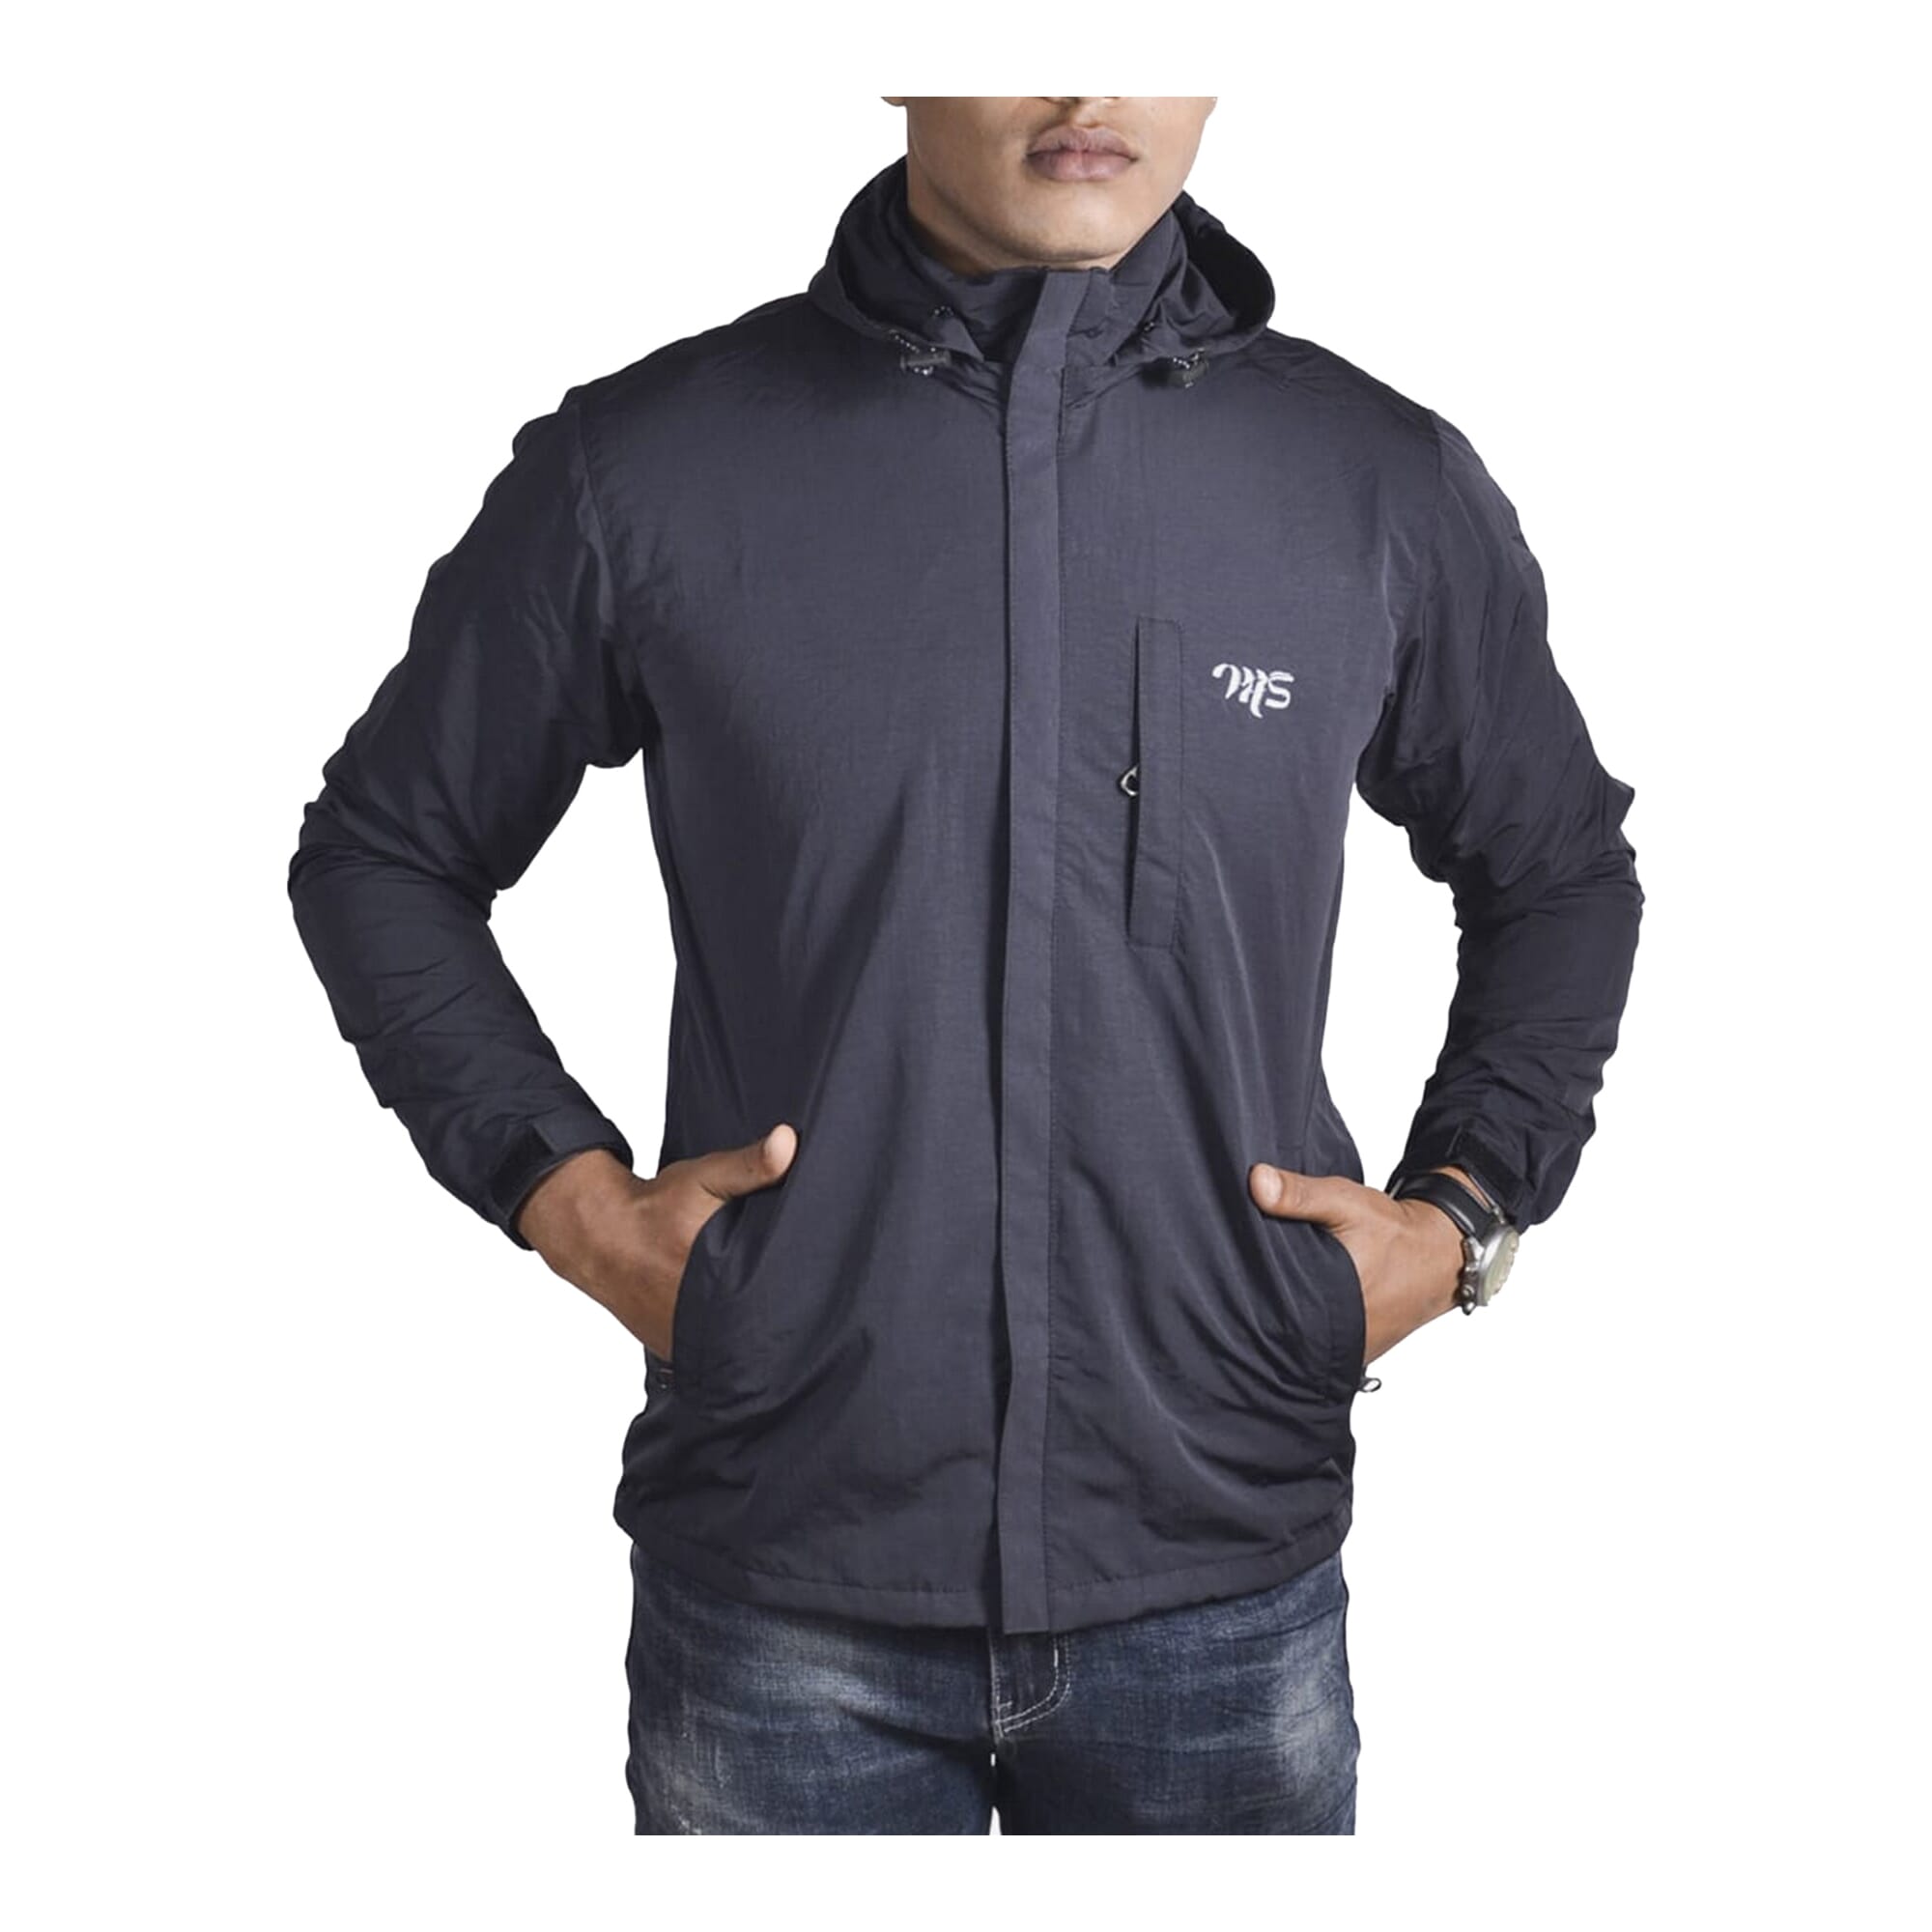 LEEy-world Mens Hoodies Men's Lightweight Flight Bomber Jacket Casual  Stripe Softshell Windbreaker Slim Fit Jacket Coat Outwear Dark Gray,L